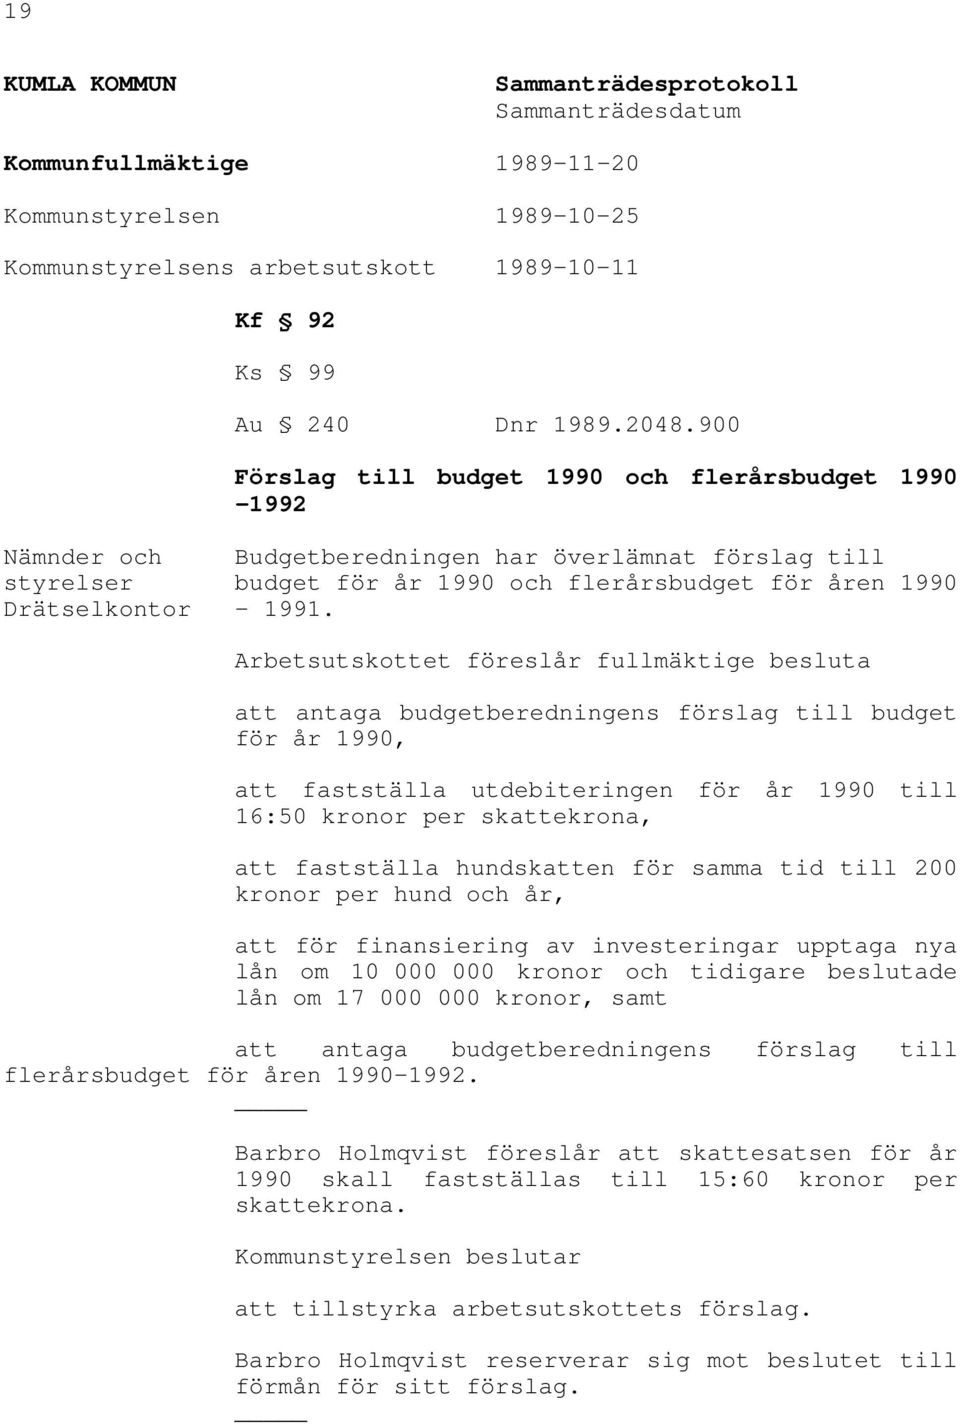 Arbetsutskottet föreslår fullmäktige besluta att antaga budgetberedningens förslag till budget för år 1990, att fastställa utdebiteringen för år 1990 till 16:50 kronor per skattekrona, att fastställa